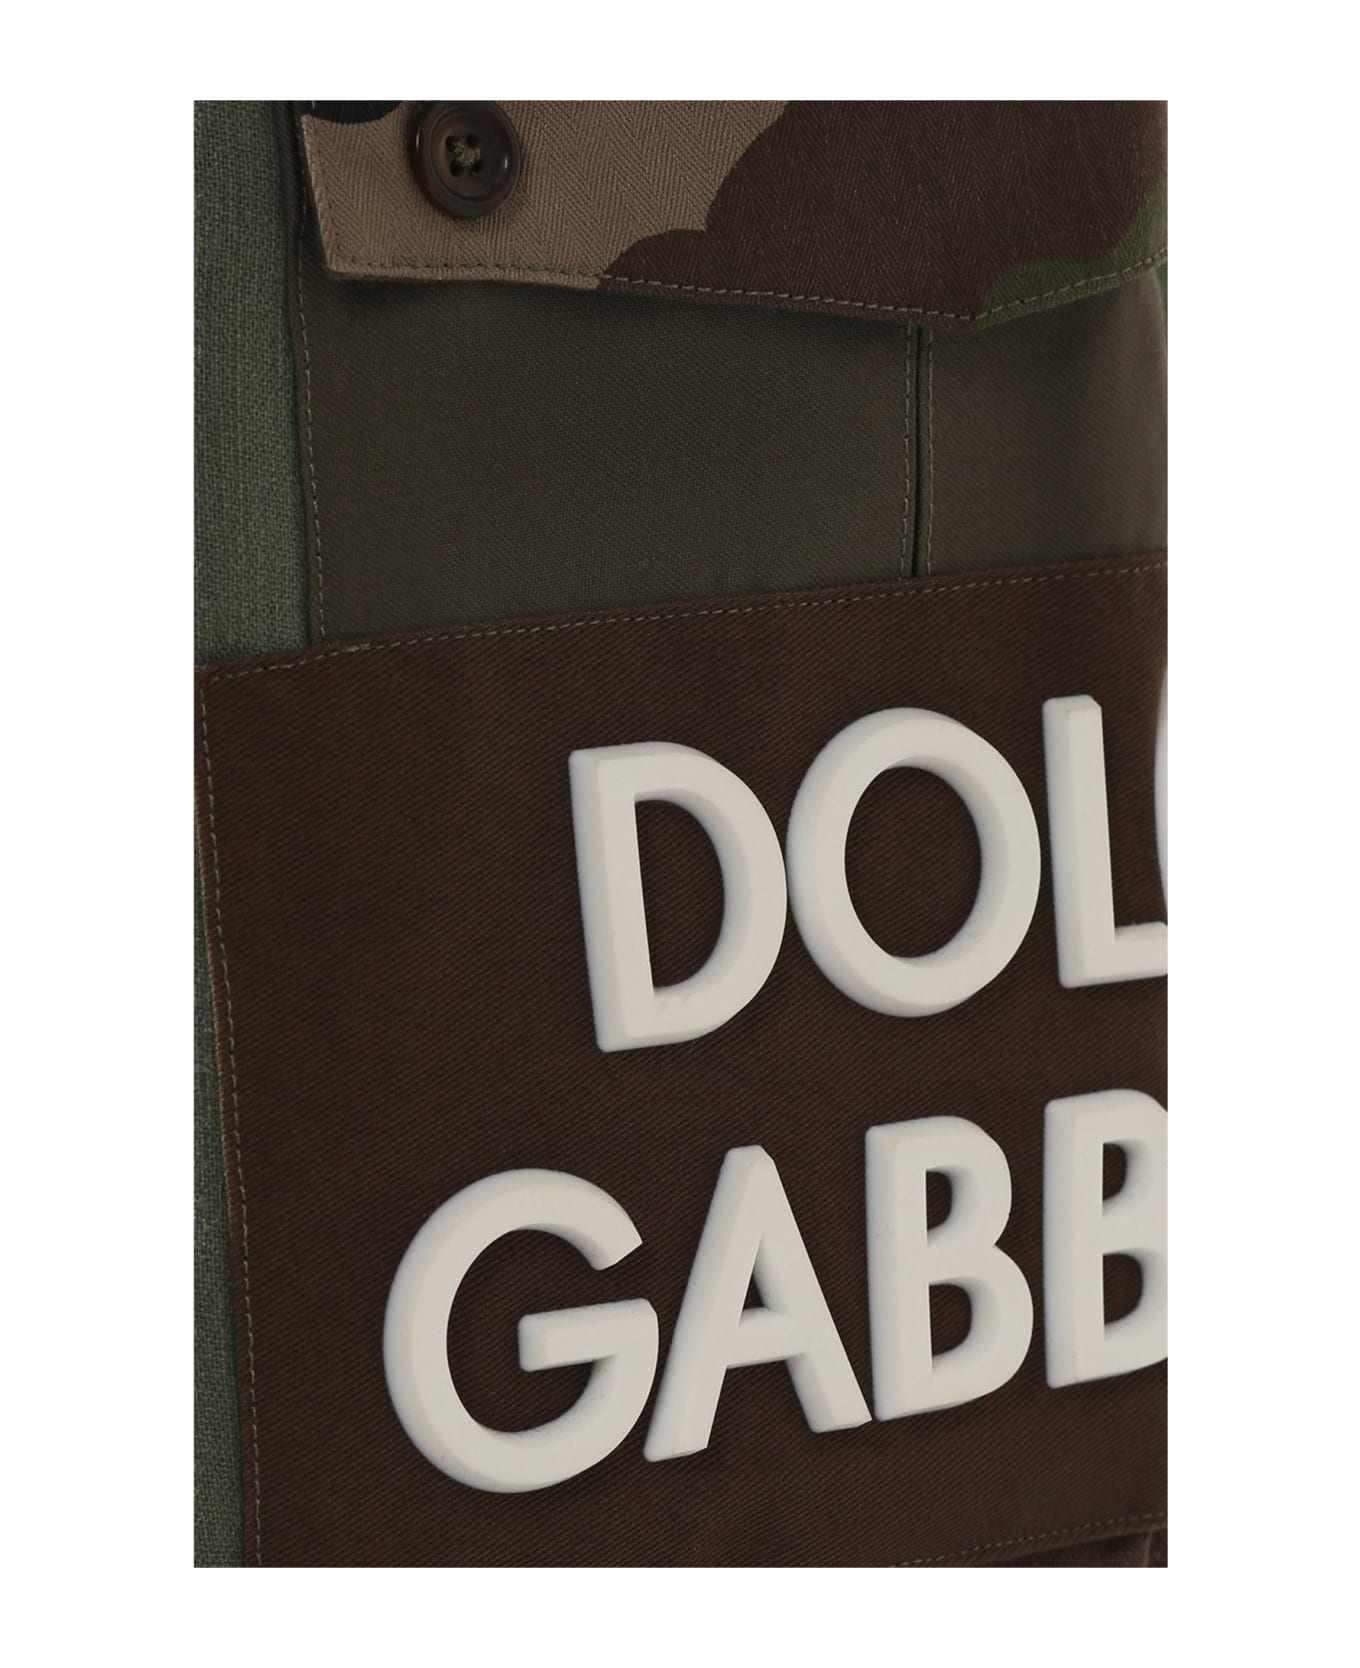 Dolce & Gabbana Cotton Shorts - Green ショートパンツ